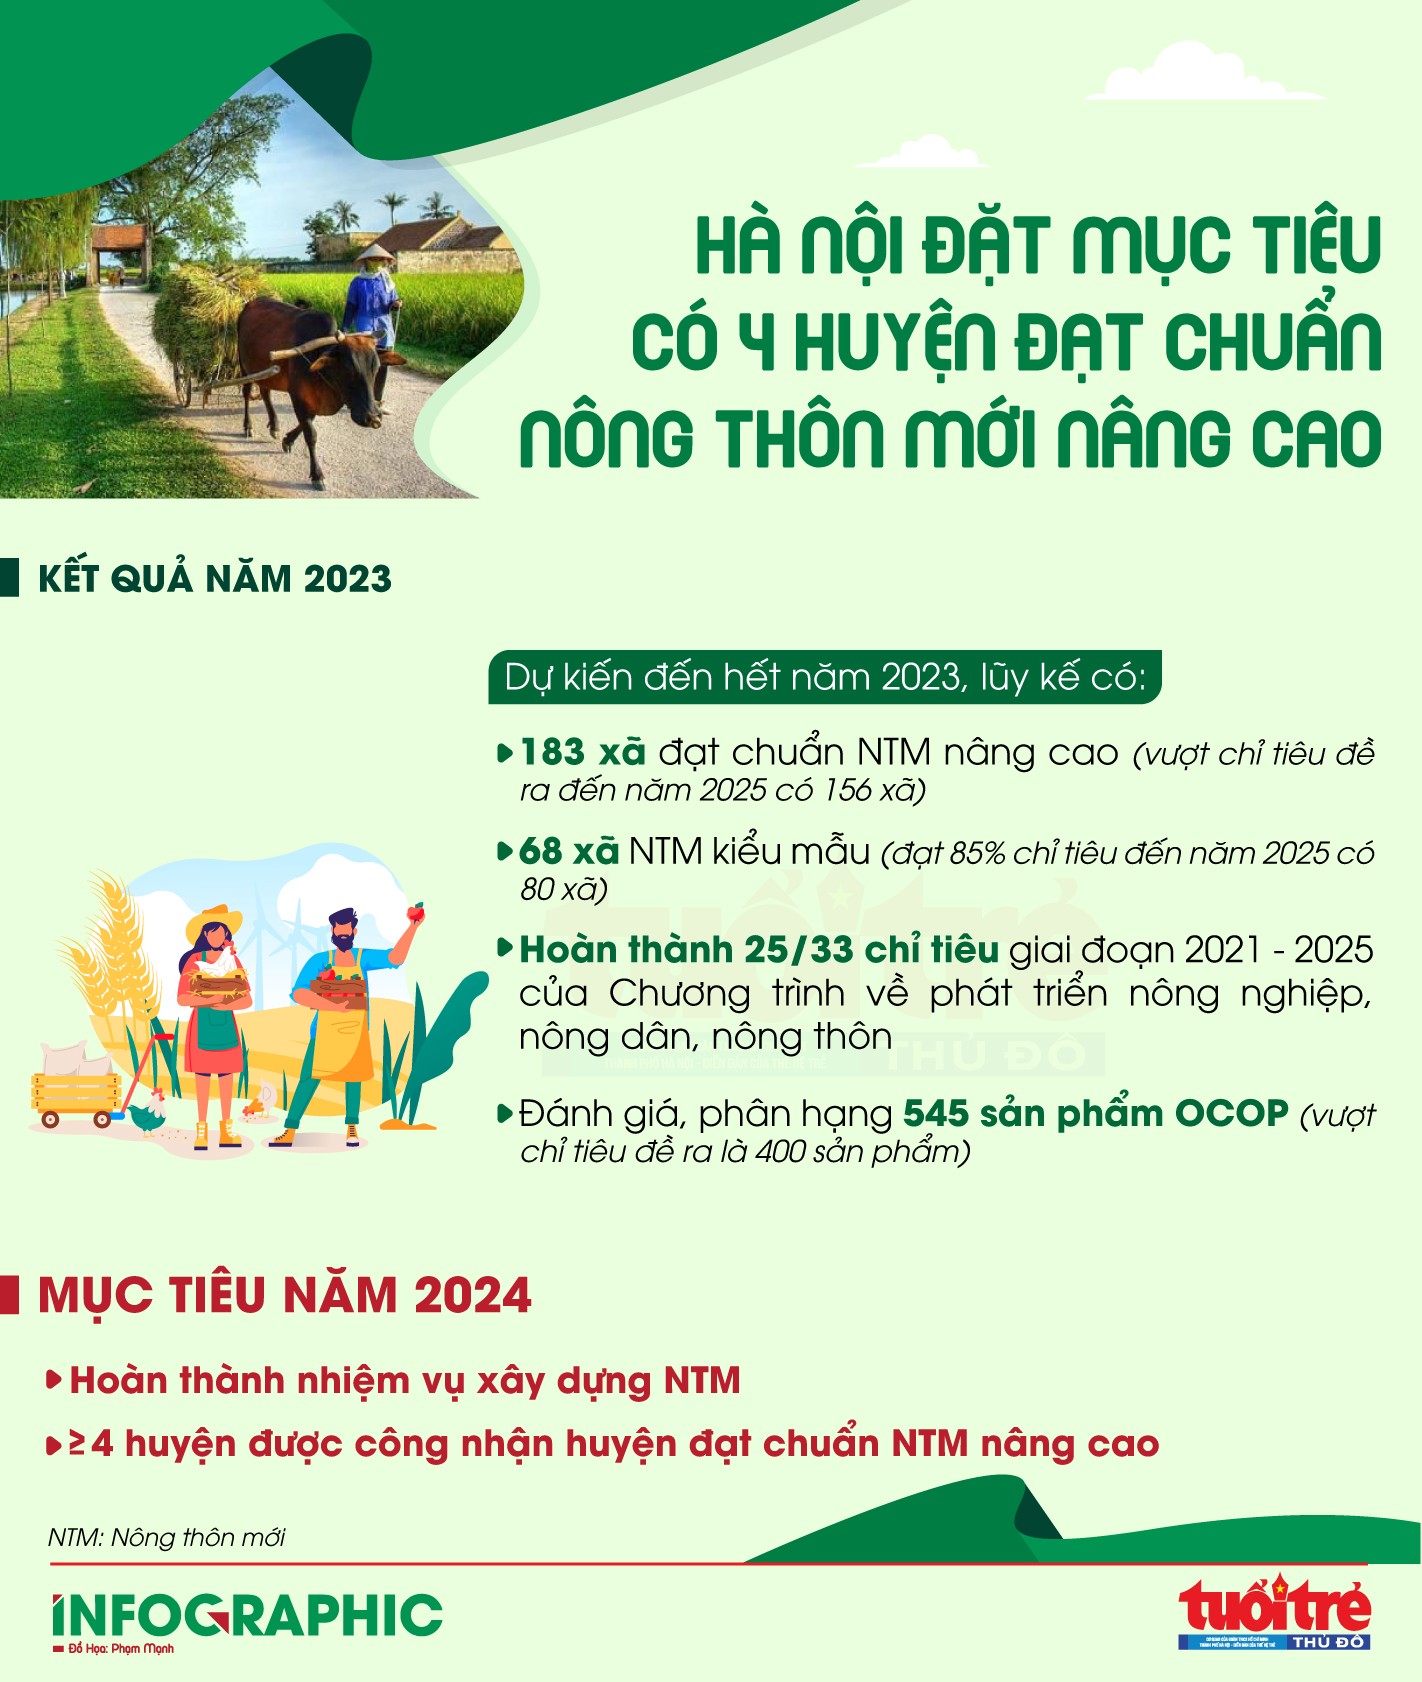 Hà Nội đặt mục tiêu có 4 huyện NTM nâng cao năm 2024